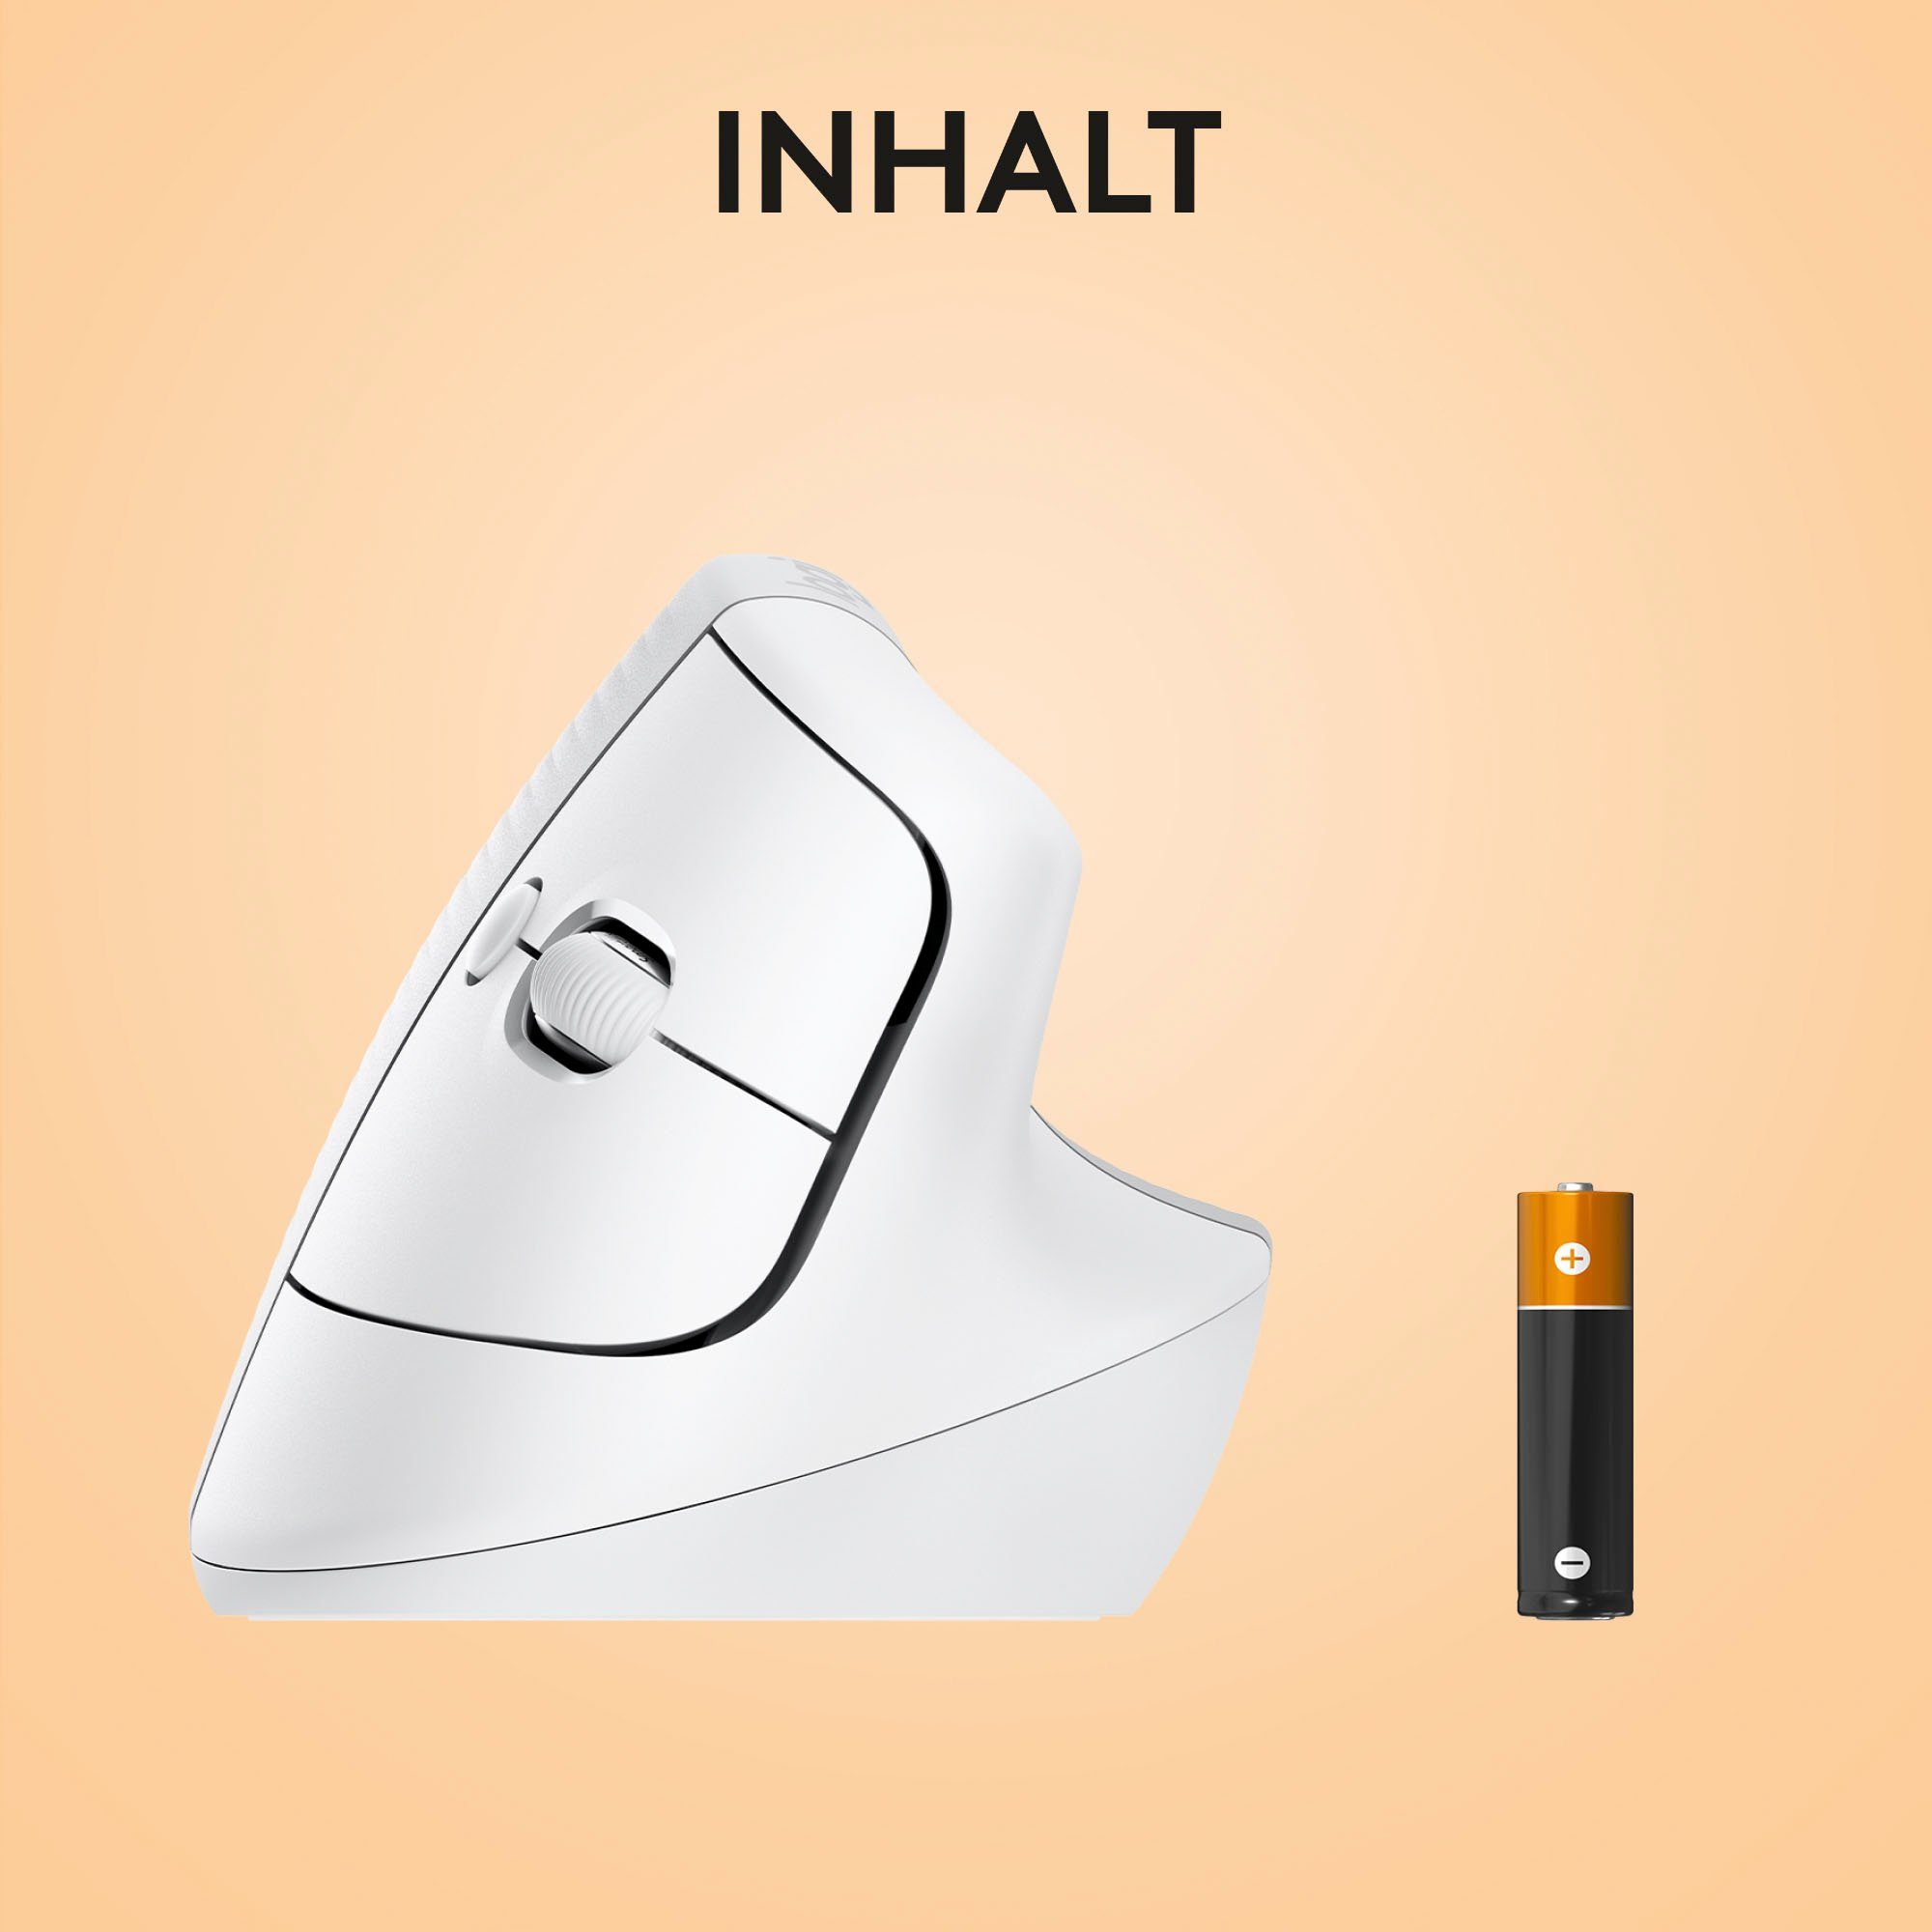 Logitech Lift for ergonomische Maus Mac (Bluetooth) Vertical